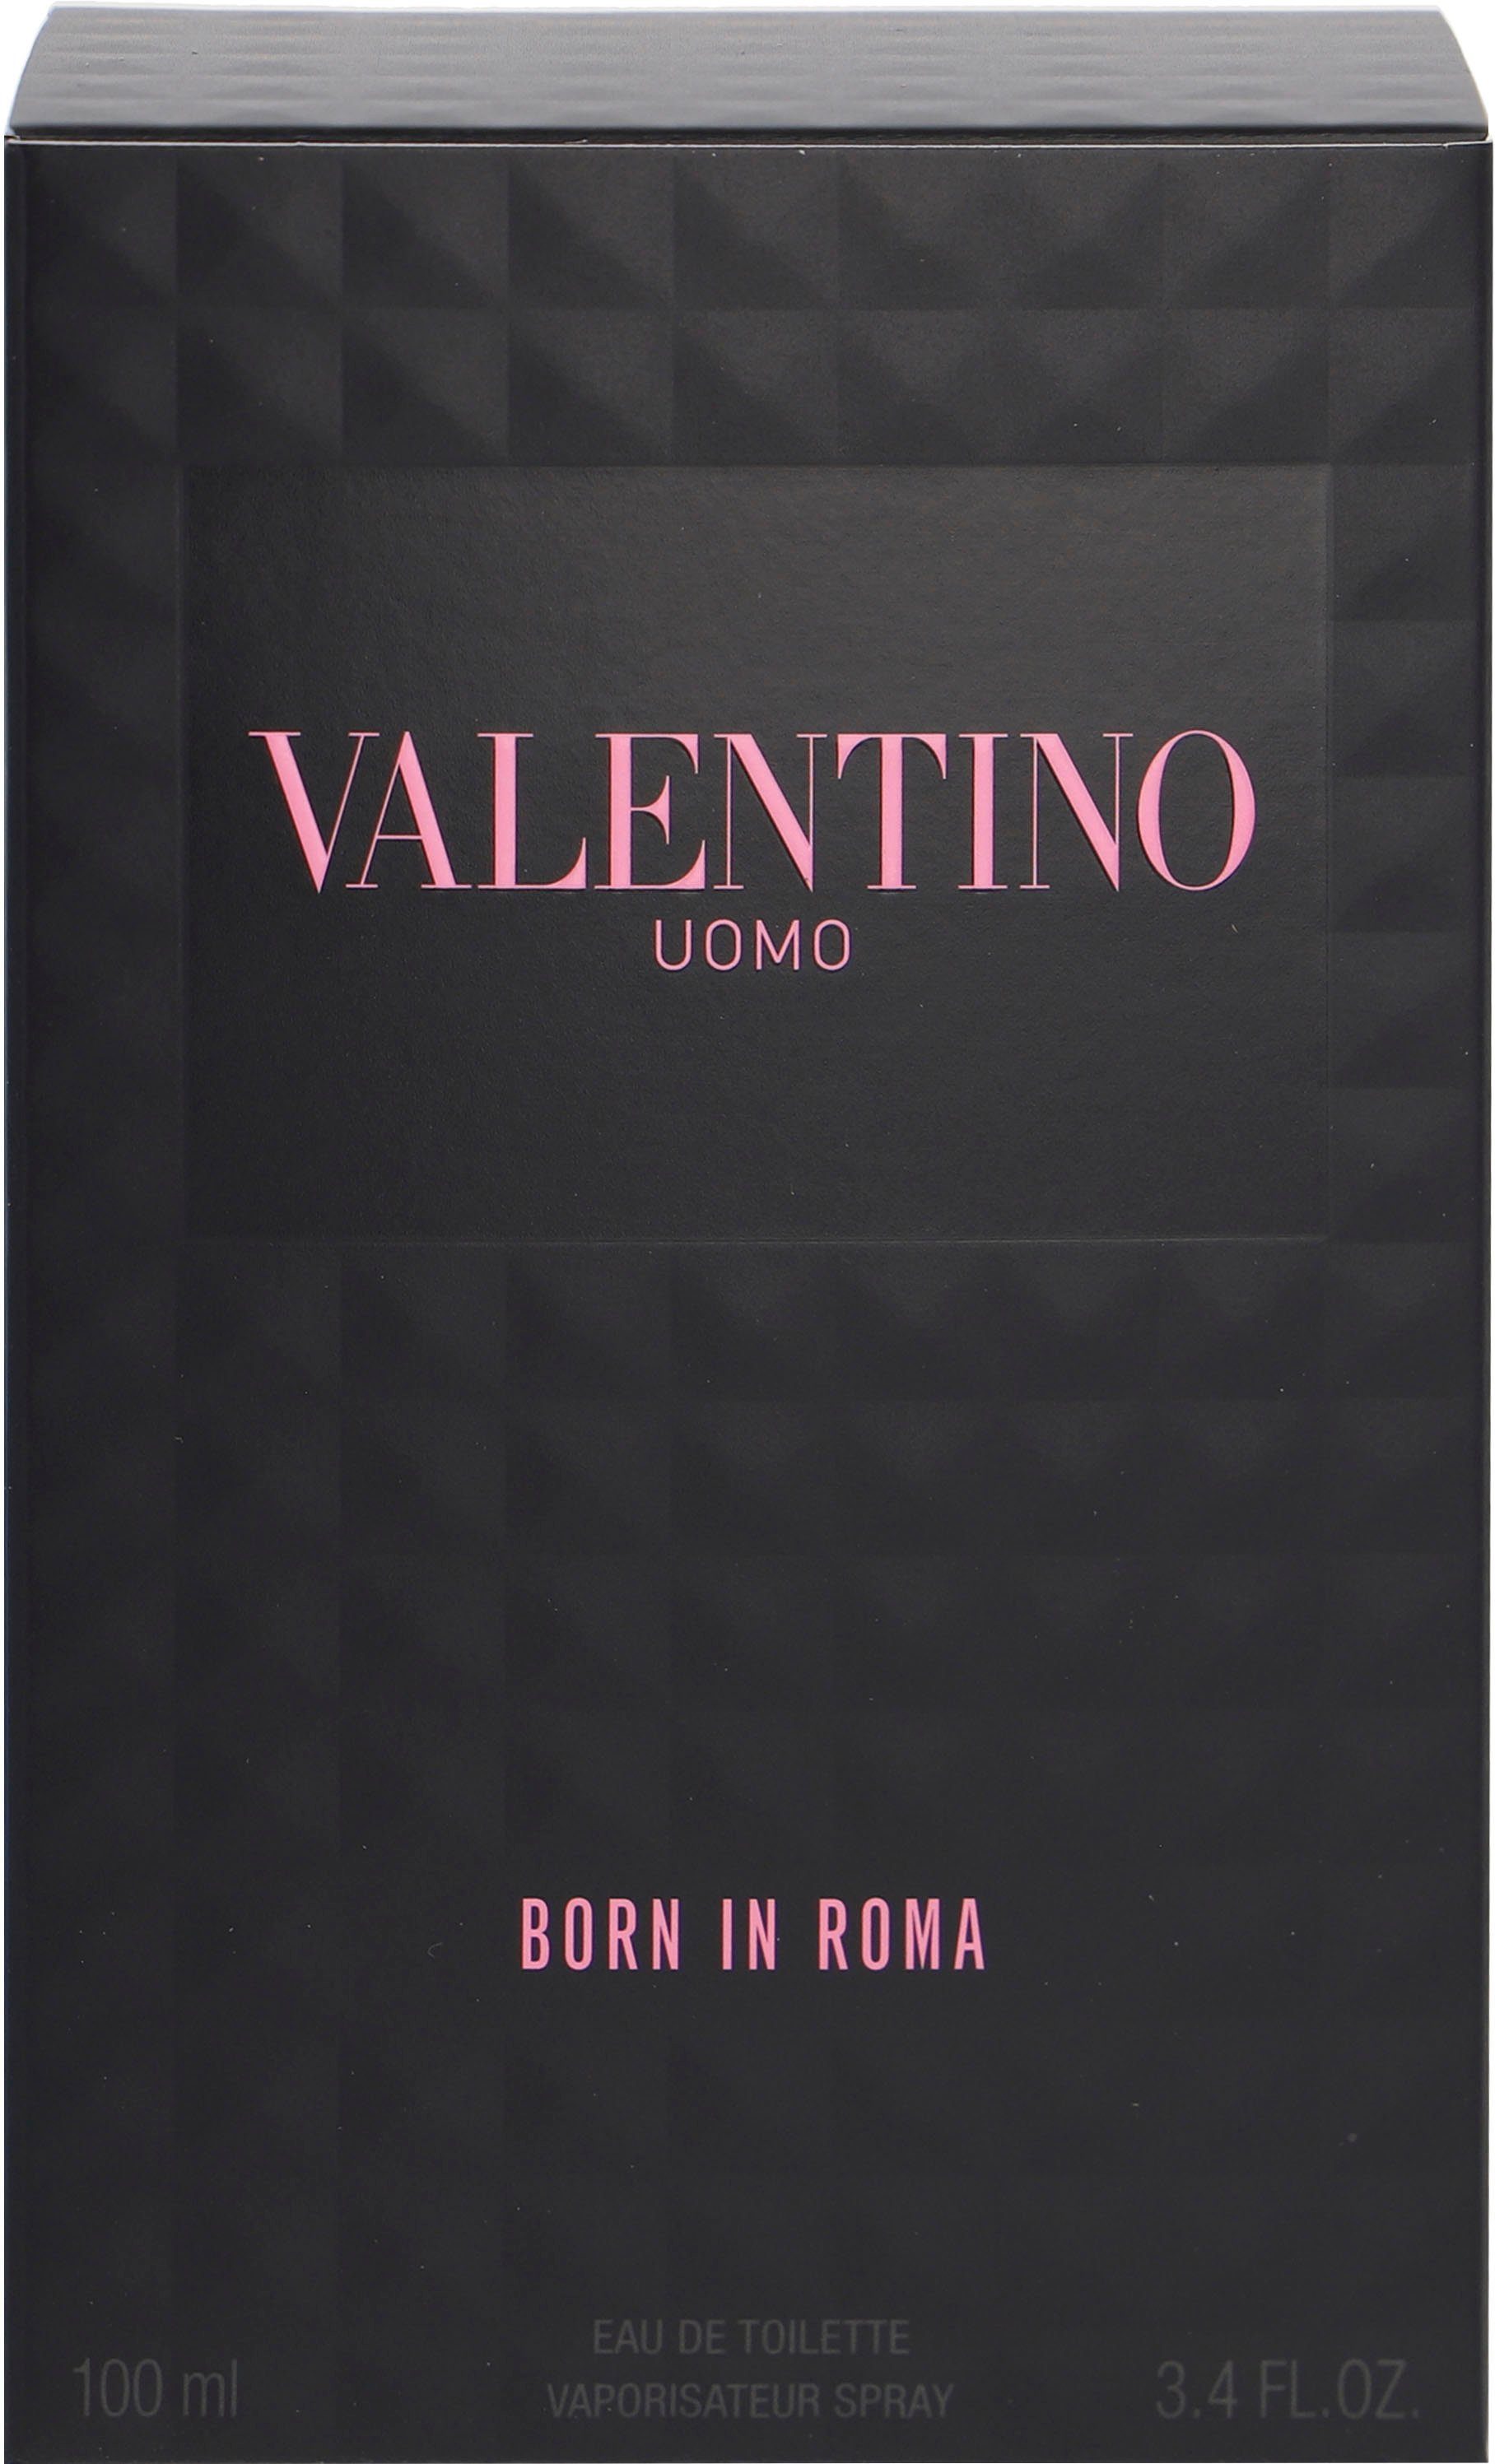 Valentino Eau de Toilette In Roma Uomo Born